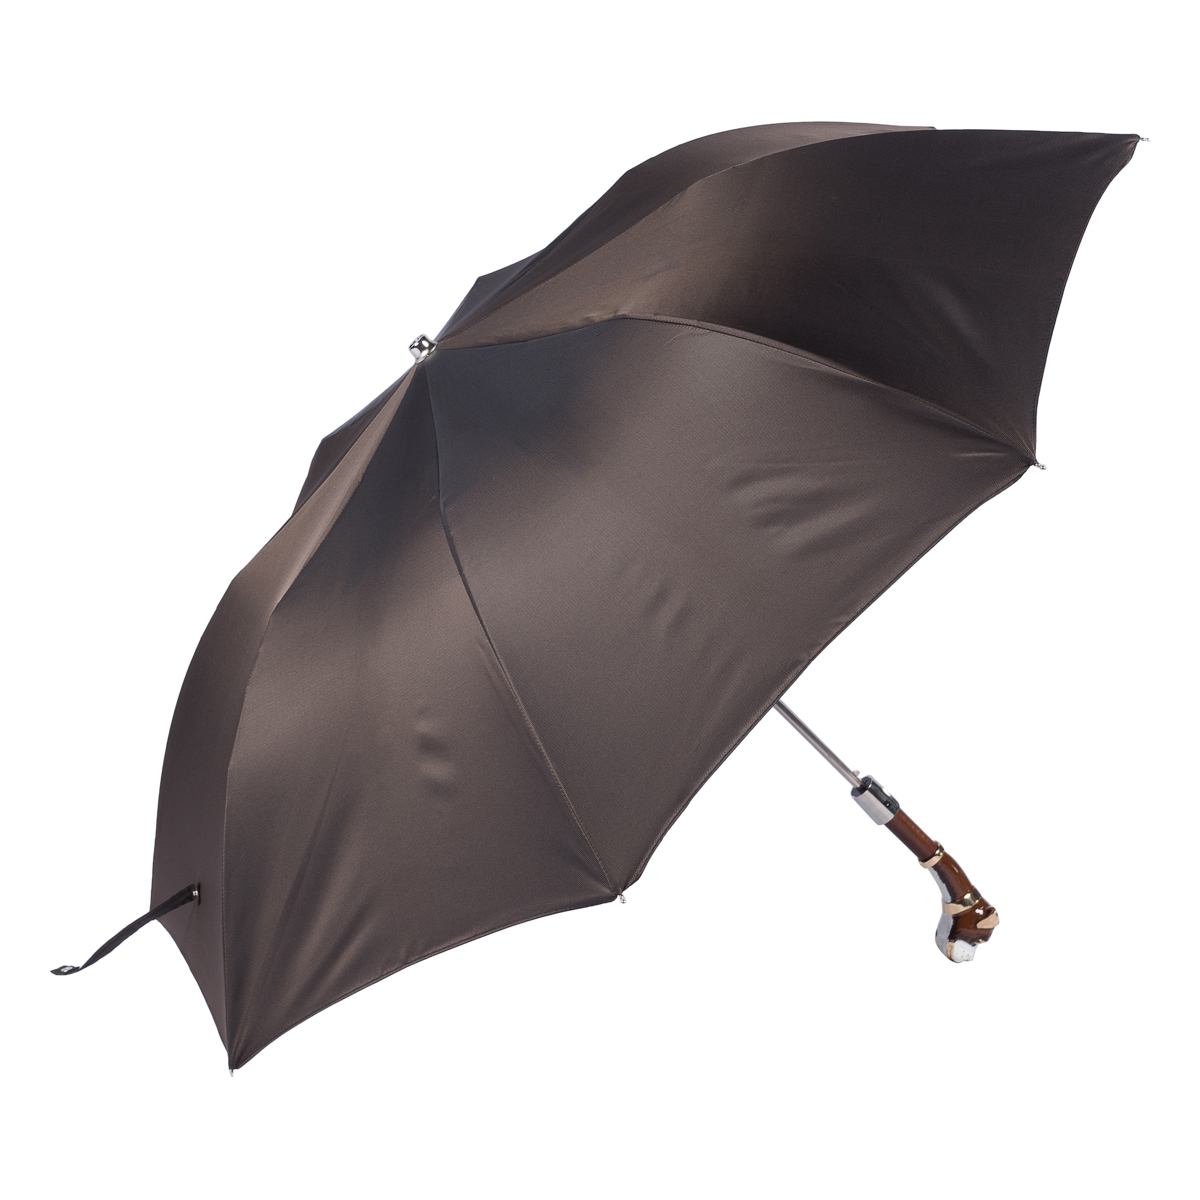 Зонт складной мужской полуавтоматический PASOTTI Boxer Oxford Marrone Lux, коричневый